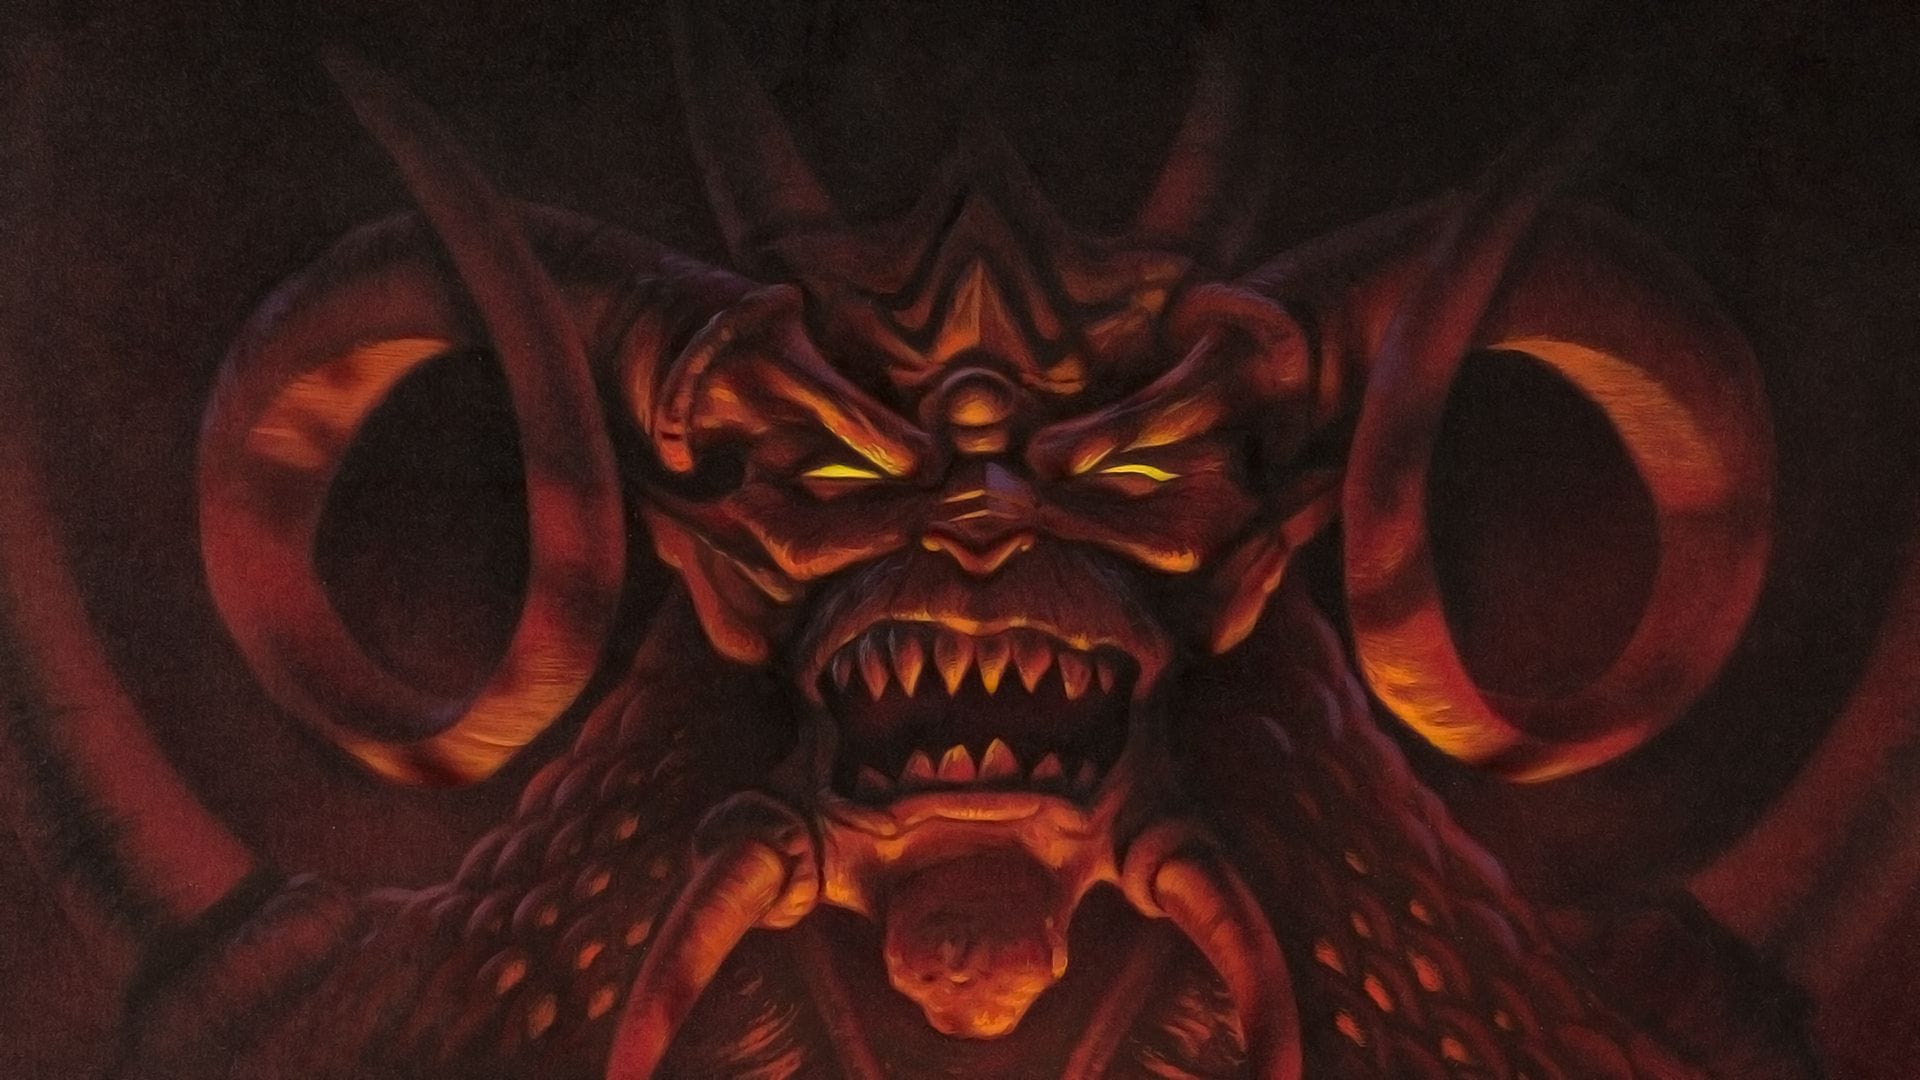 Zmierz się z Władcą Grozy w Diablo – dostępnym od teraz w sklepie Battle.net